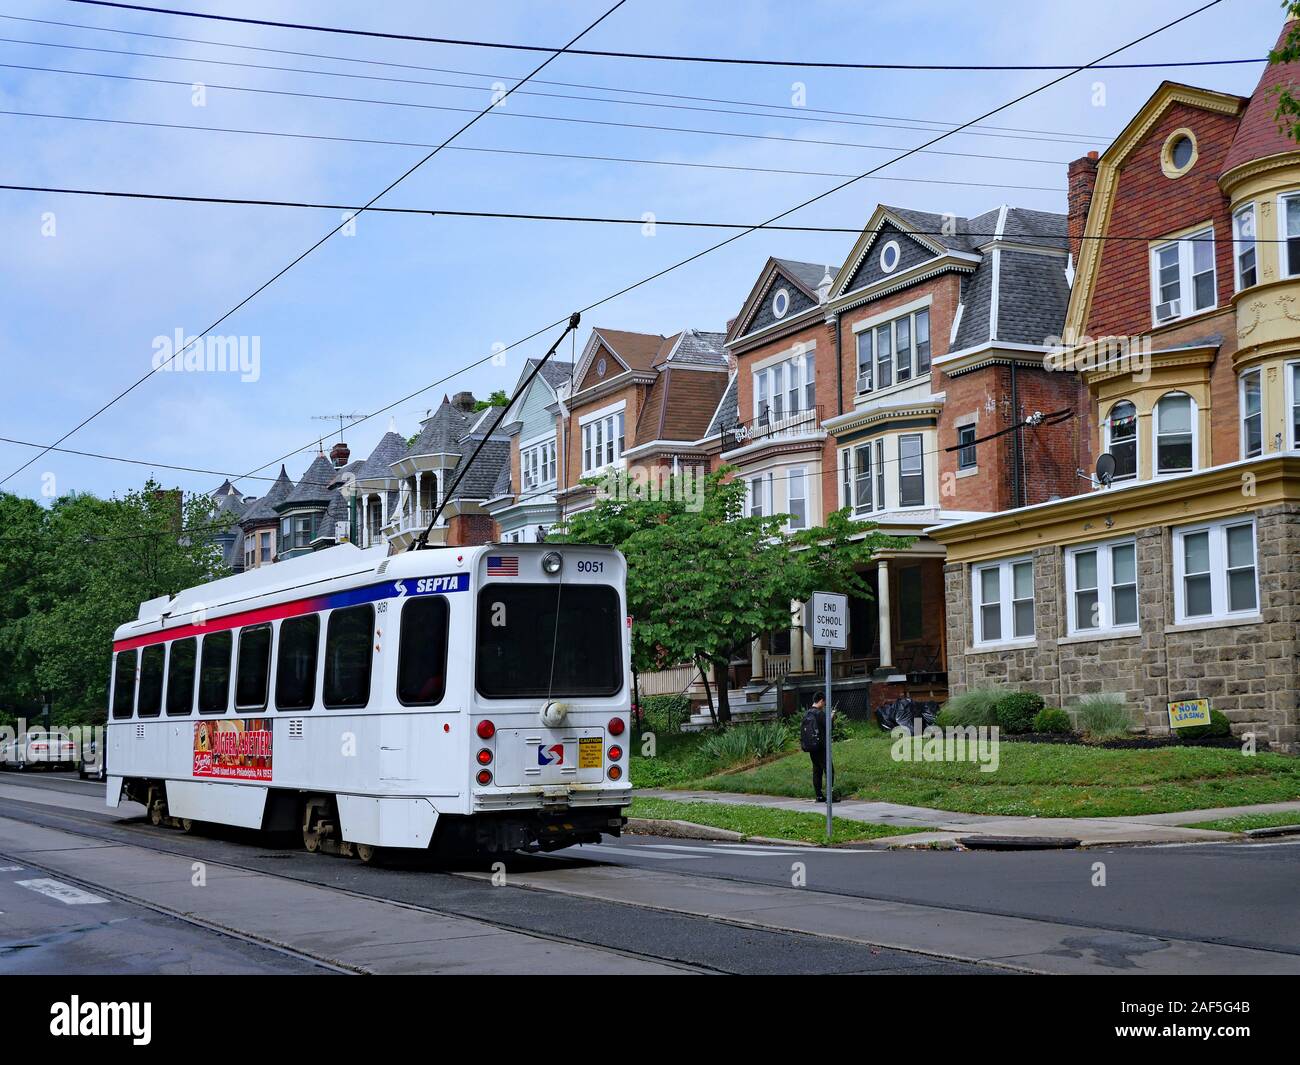 PHILADELPHIA - Mai 2019: Trolley Wagen Titel bieten öffentliche Verkehrsmittel in der Nähe von der Universität von Pennsylvania. Stockfoto